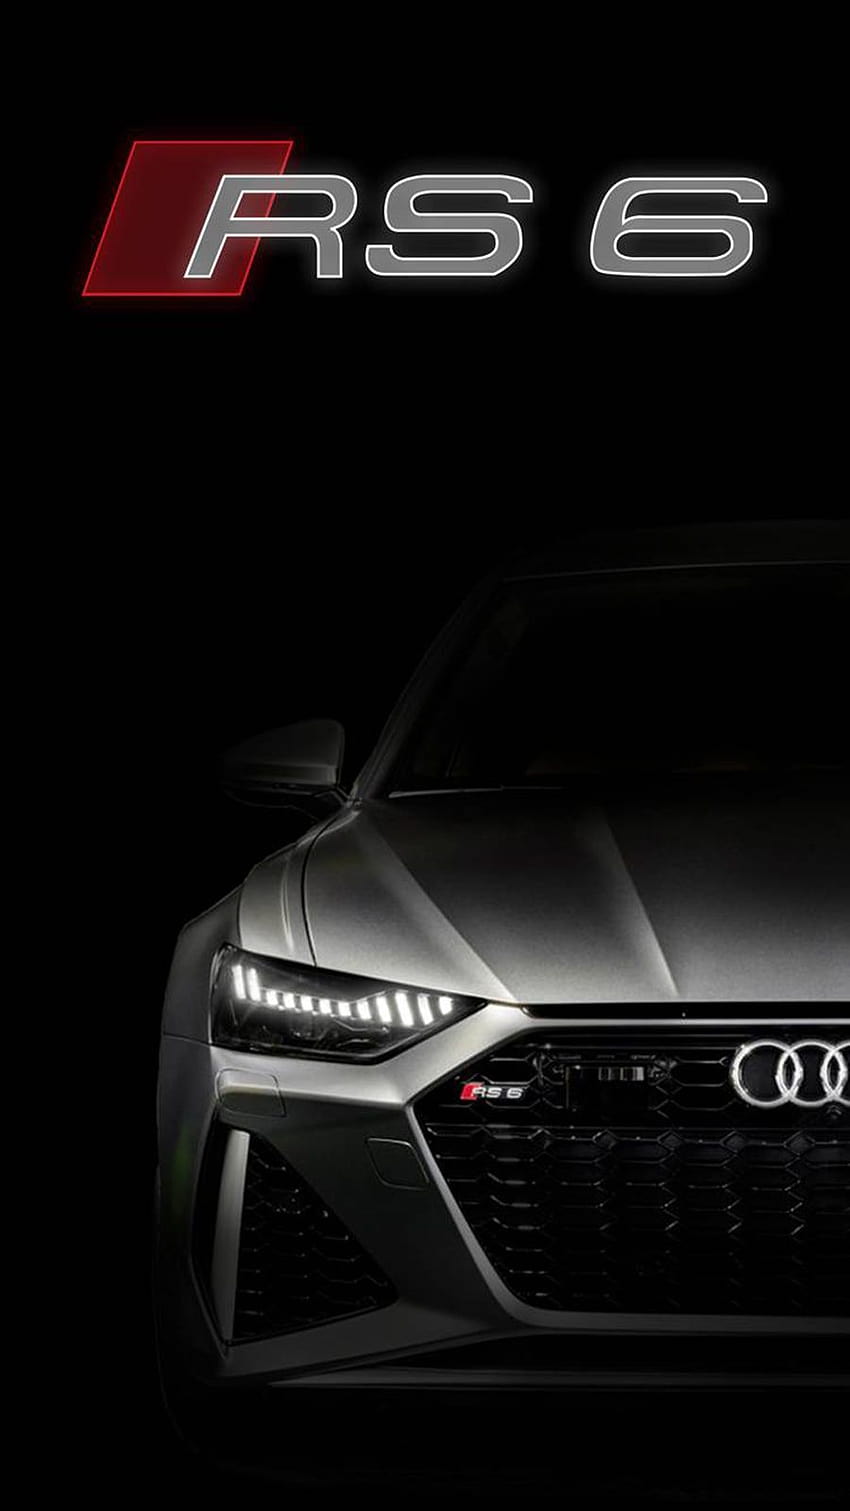 Audi RS6 2020 für Ihr Gerät, audi rs6 iphone HD-Handy-Hintergrundbild